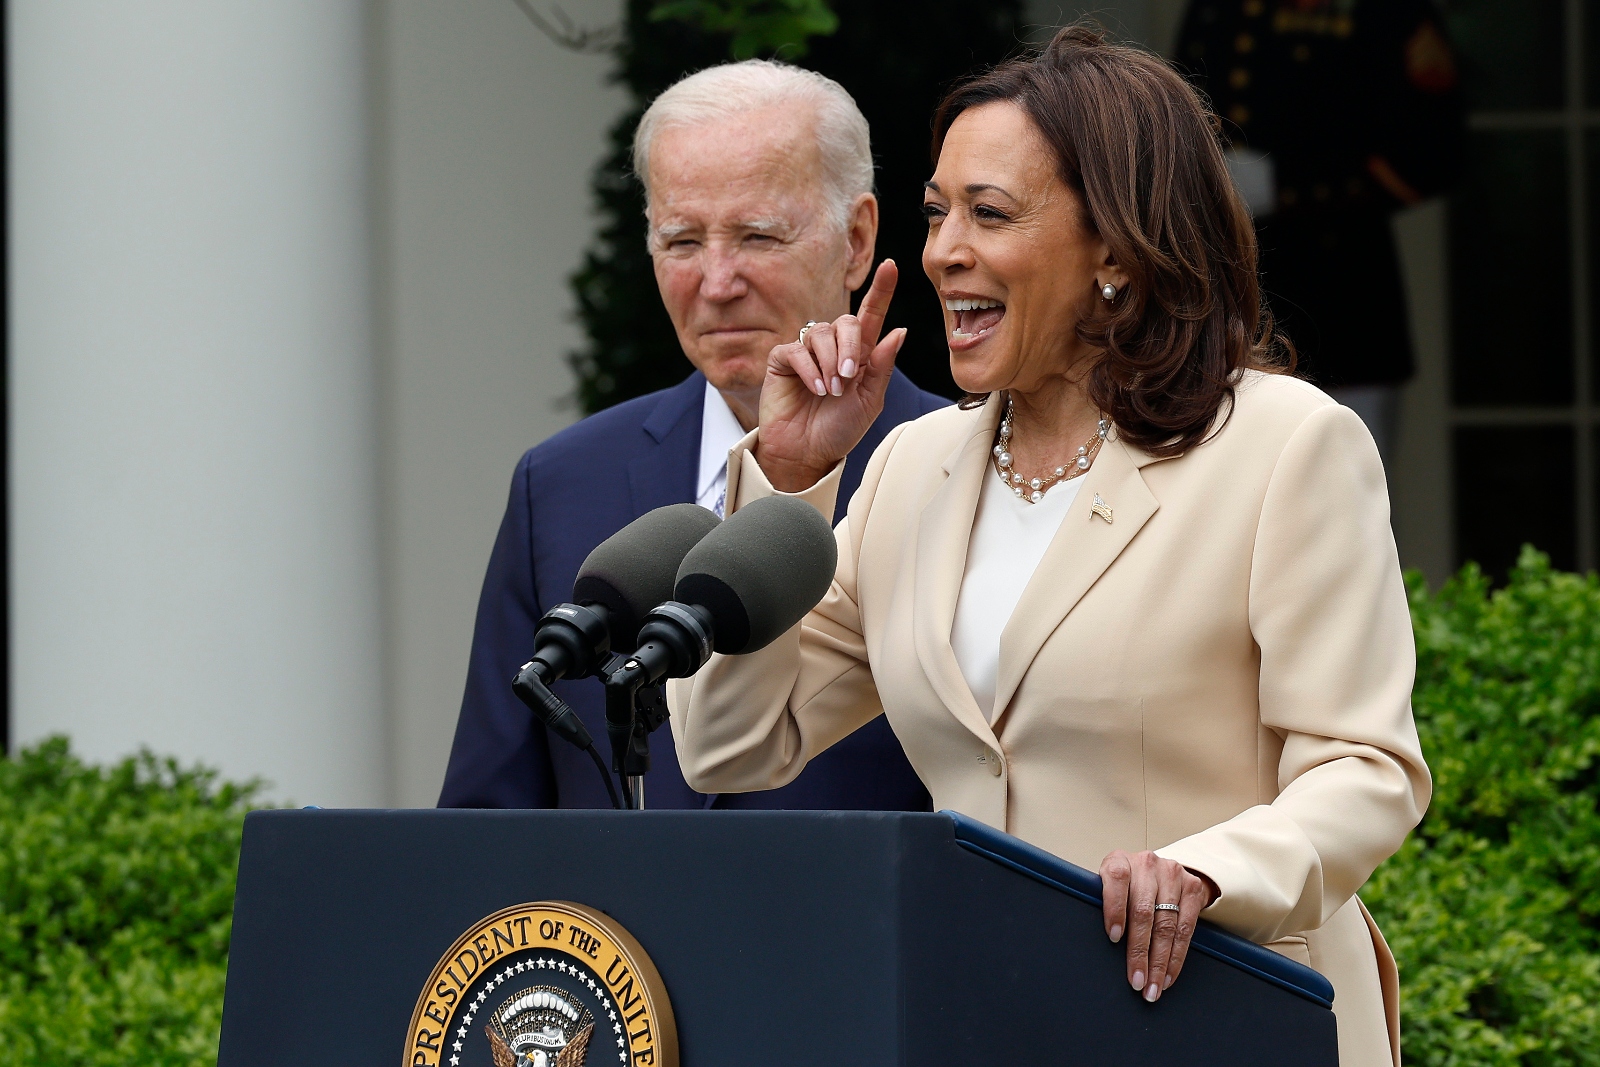 Kamala Harris speaks at a lectern outside with Joe Biden in the background